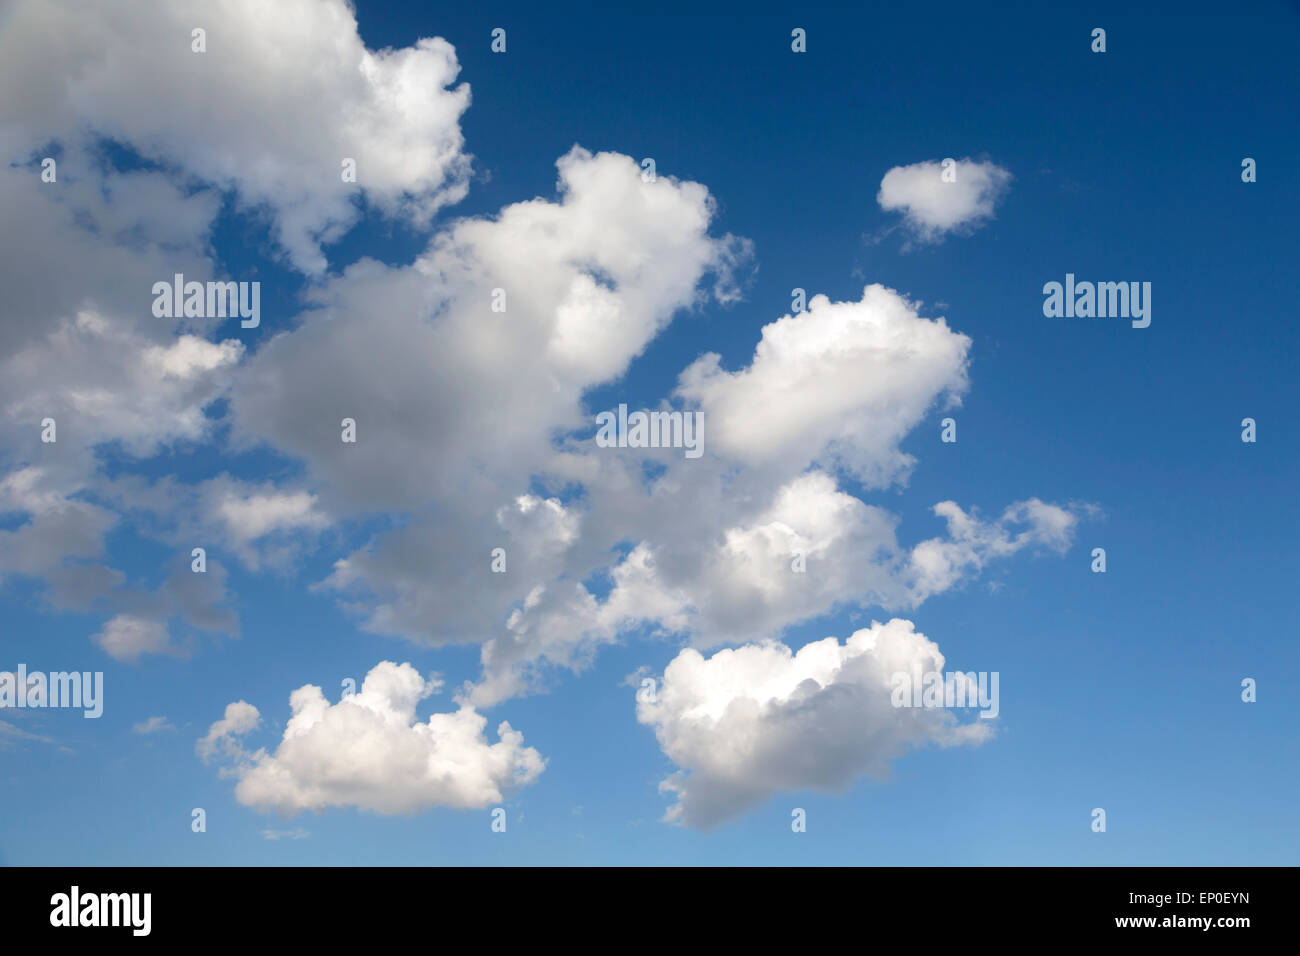 Cumulus clouds in blue sky. Stock Photo